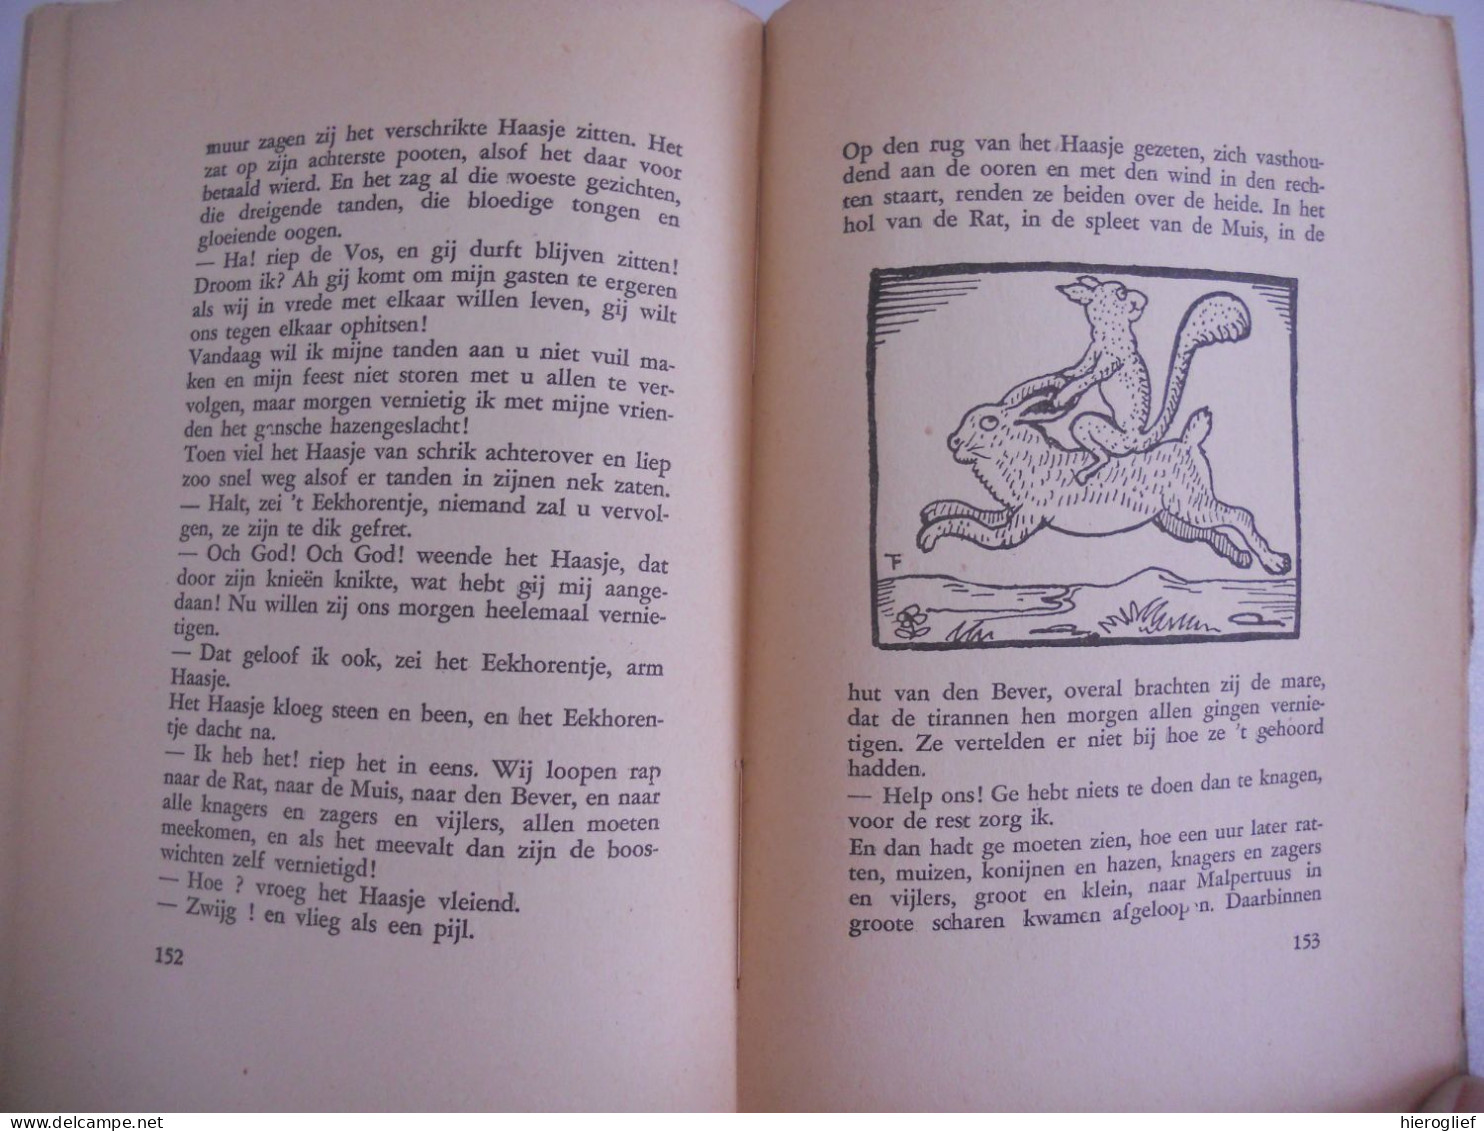 PIJP En TOEBAK Door FELIX TIMMERMANS 1933 - Lier / Tabak Illustraties Door Timmermans Zelf - Literature